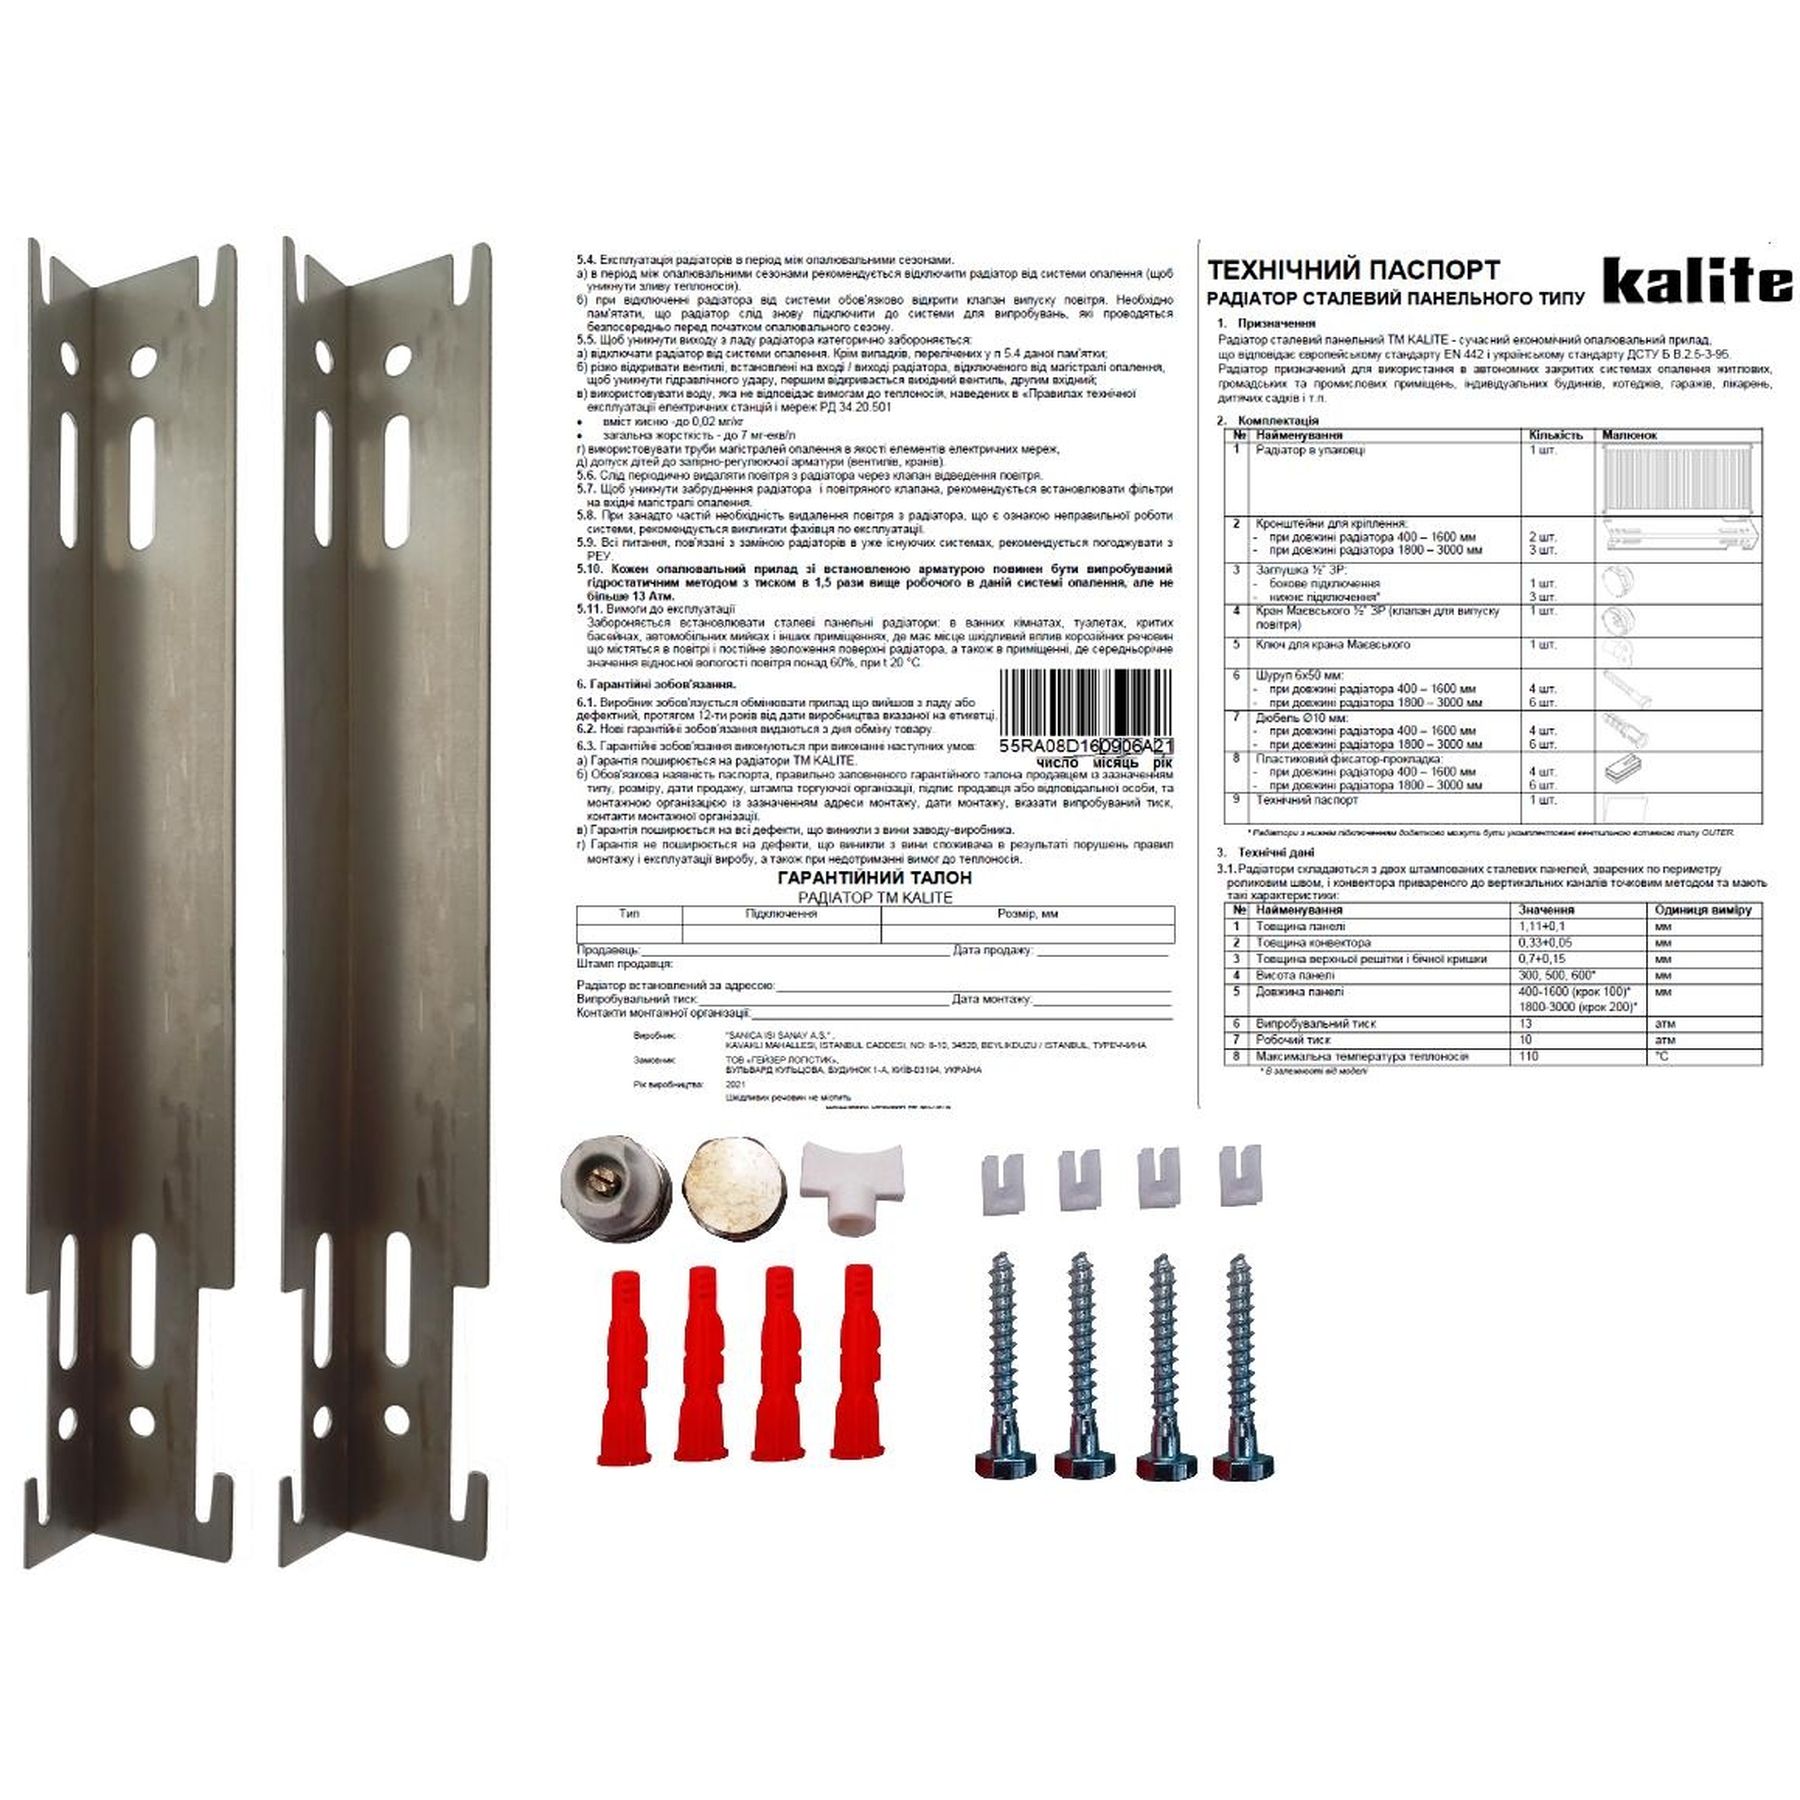 Радиатор для отопления Kalite 11 бок 500х1200 цена 3108.00 грн - фотография 2